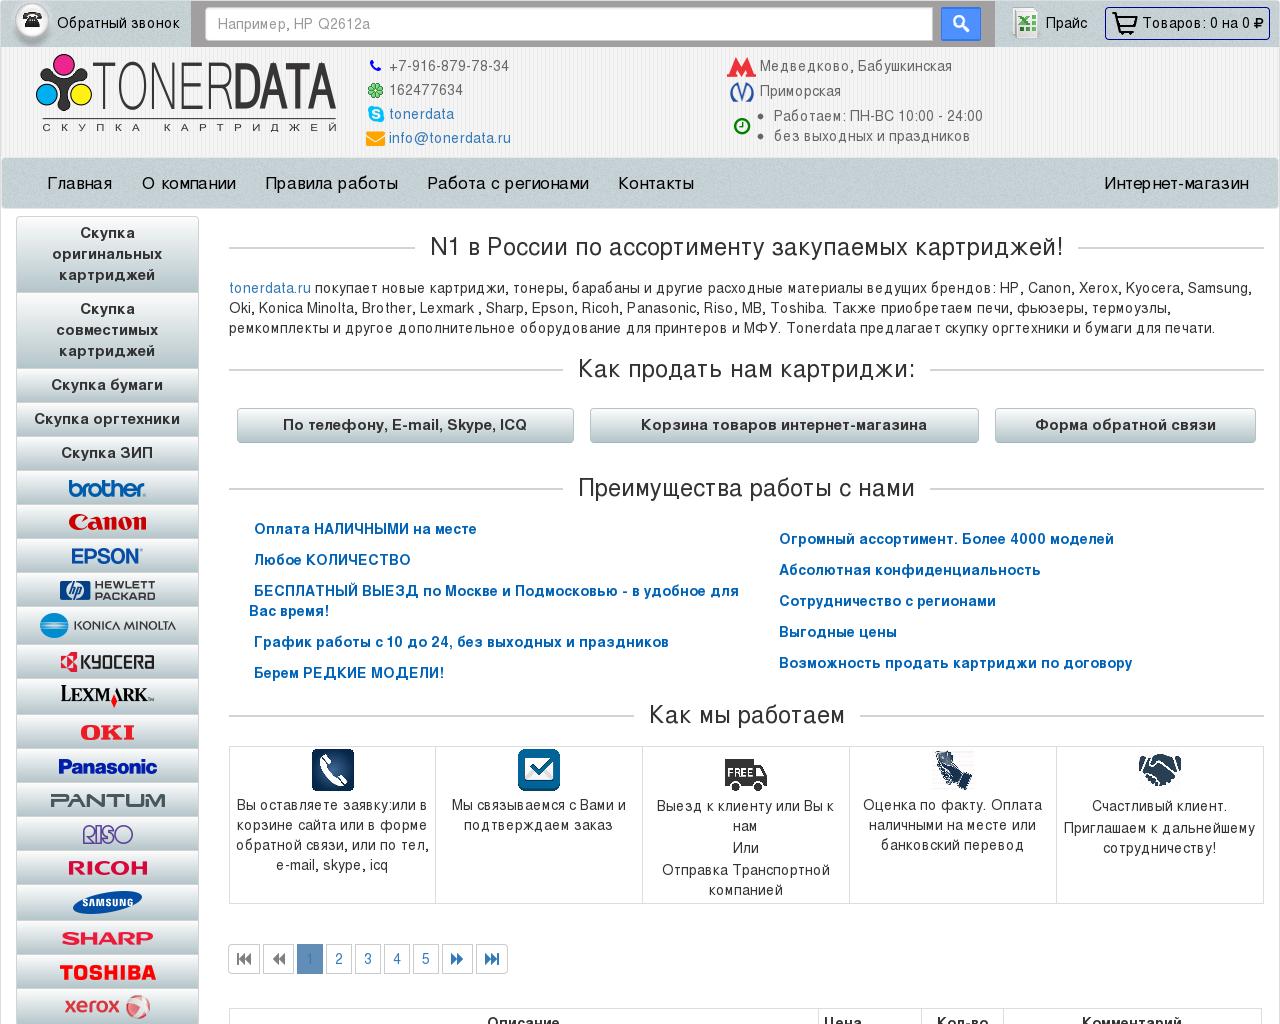 Изображение сайта tonerdata.ru в разрешении 1280x1024